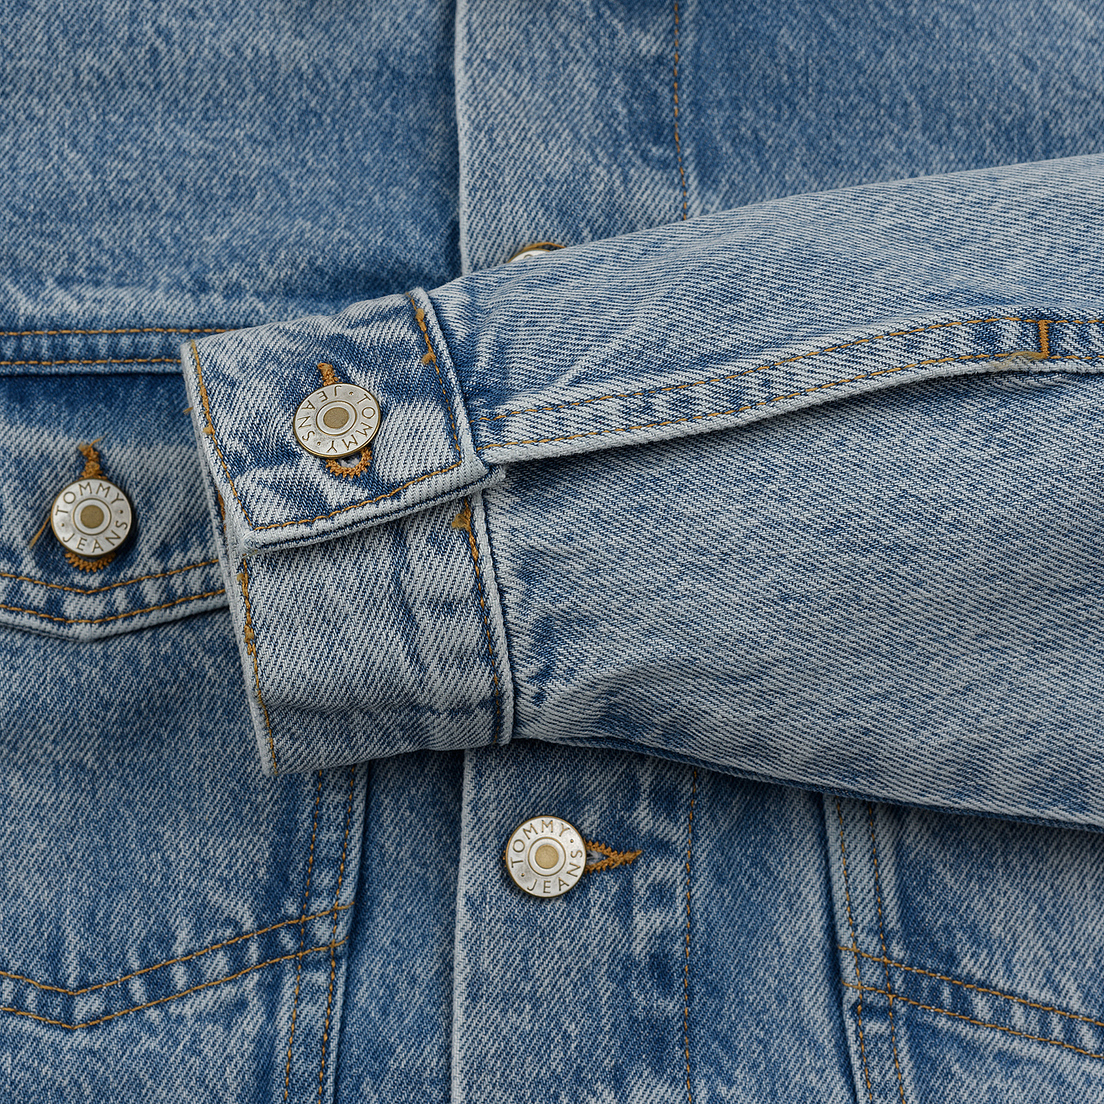 Tommy Jeans Женская джинсовая куртка Heritage Denim